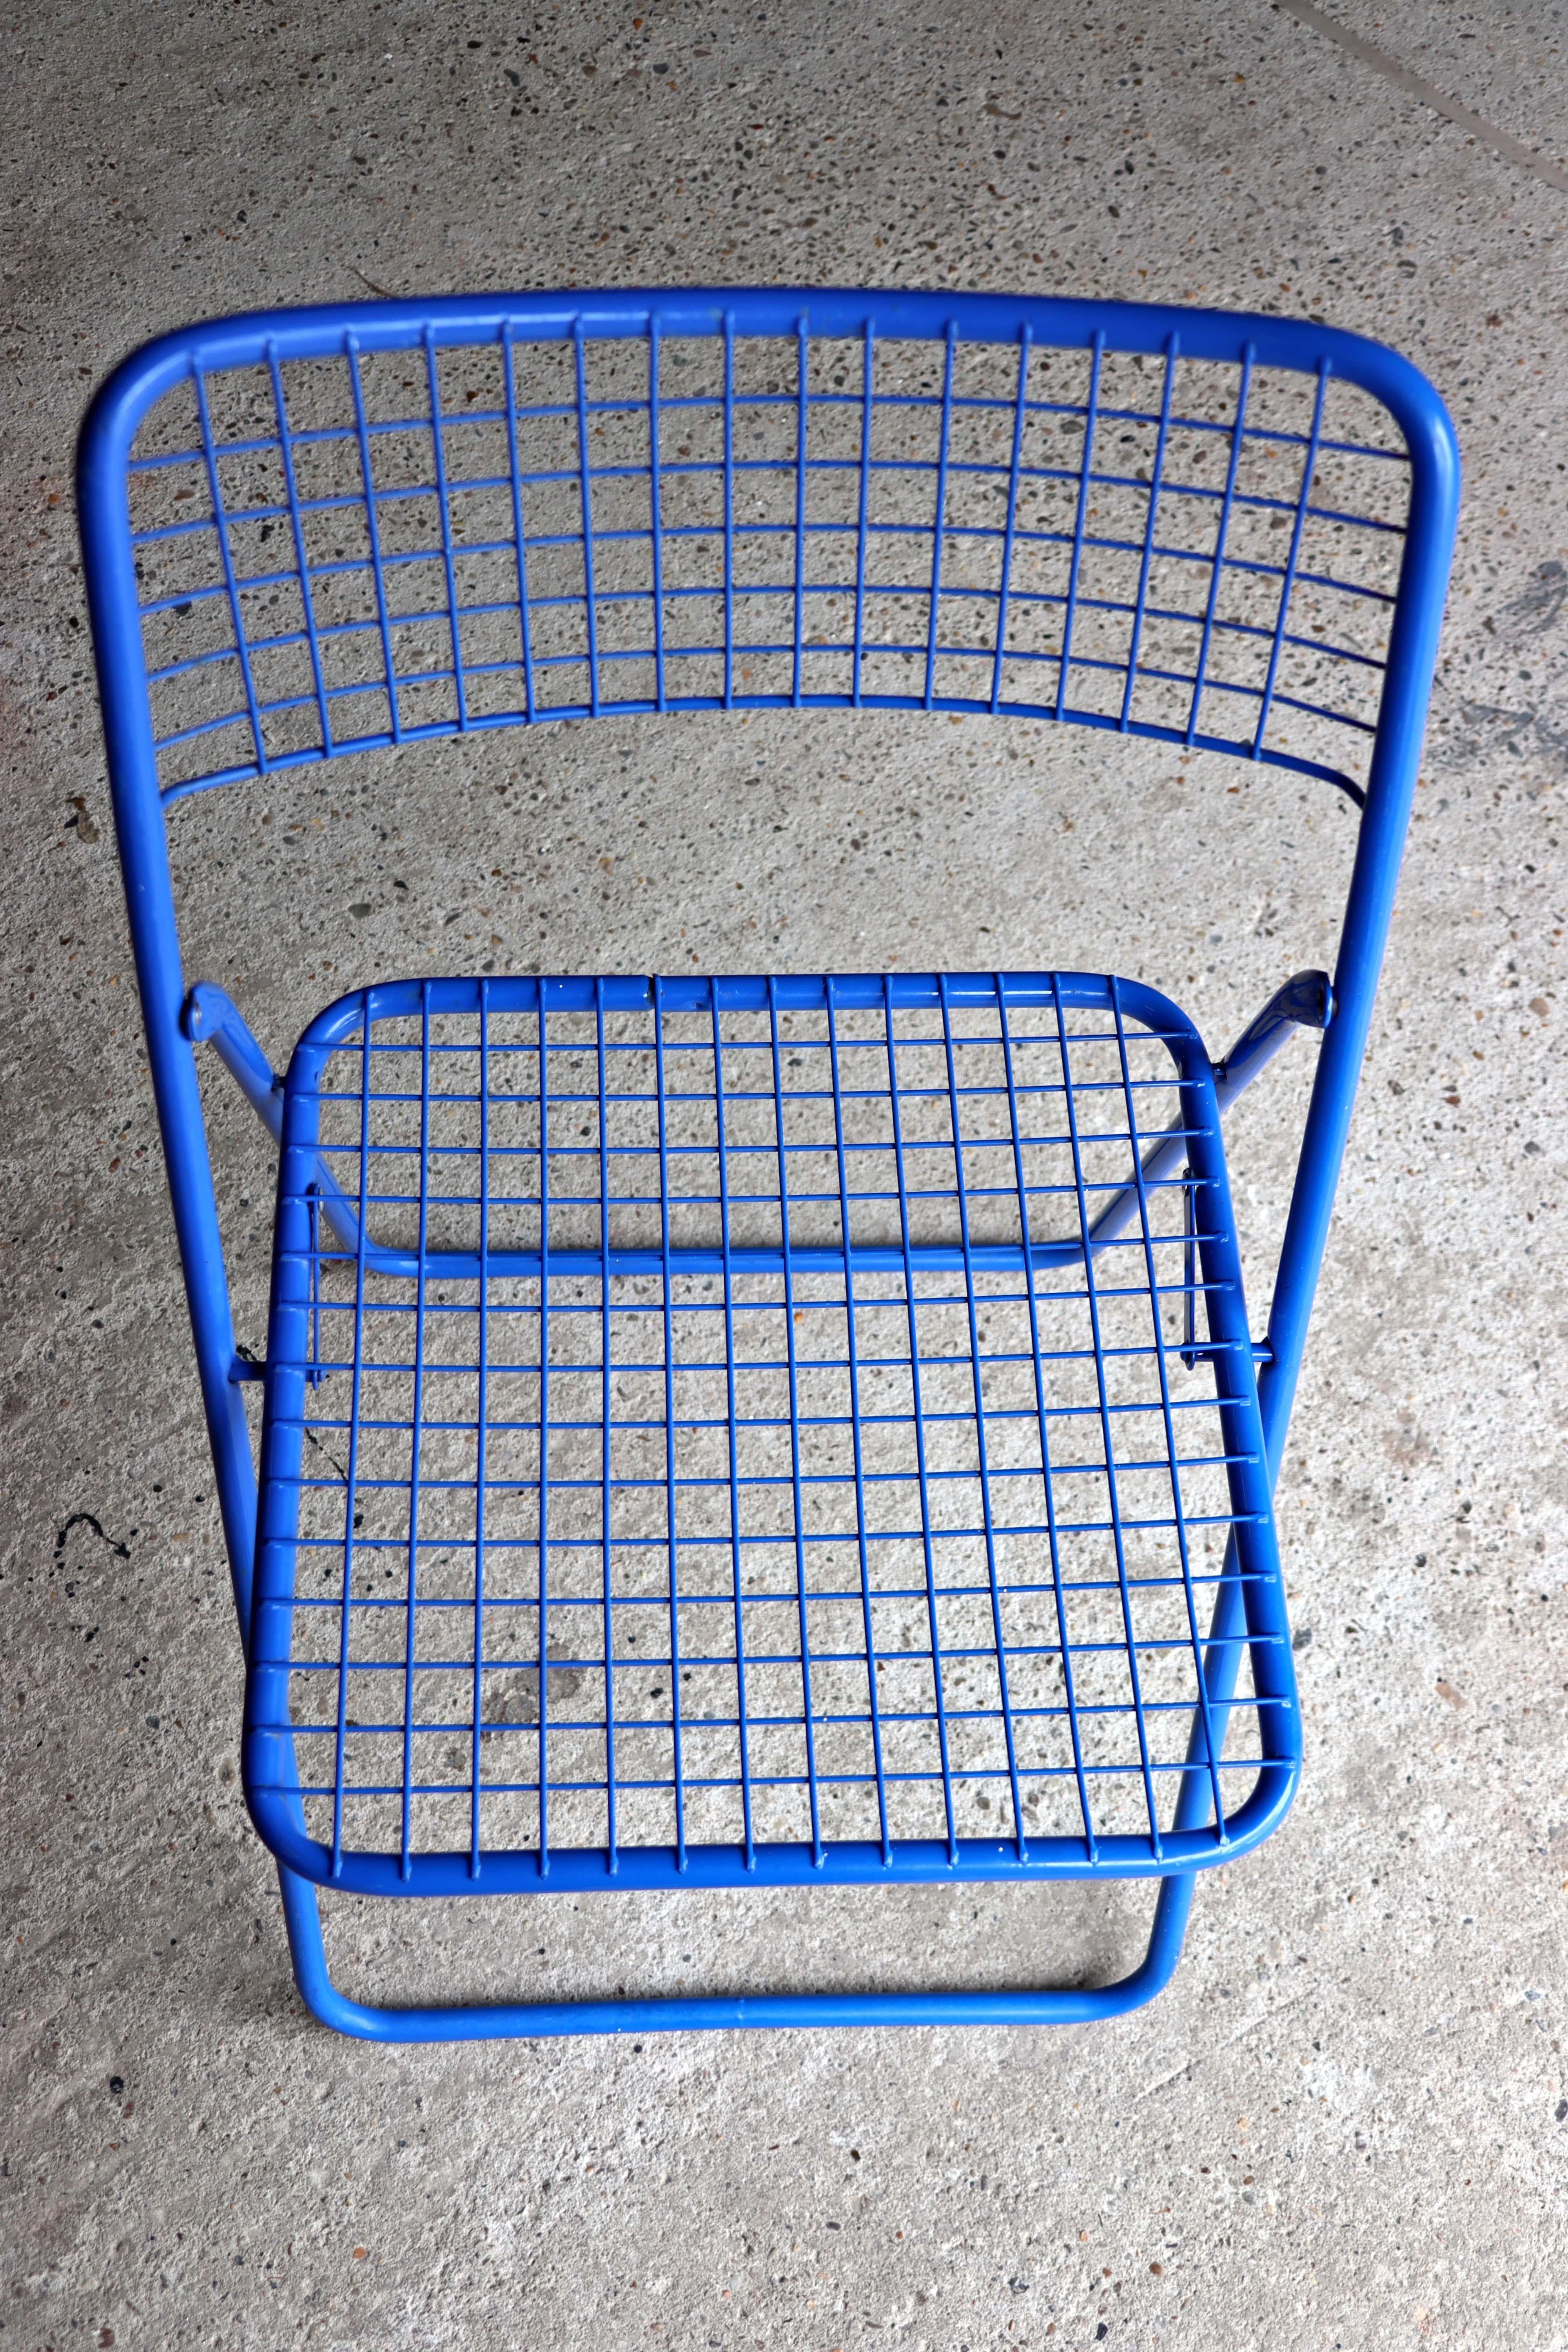 Ikea, Rappen, Ted Net Chair, Blue, Niels Gammelgaard, 1976 5